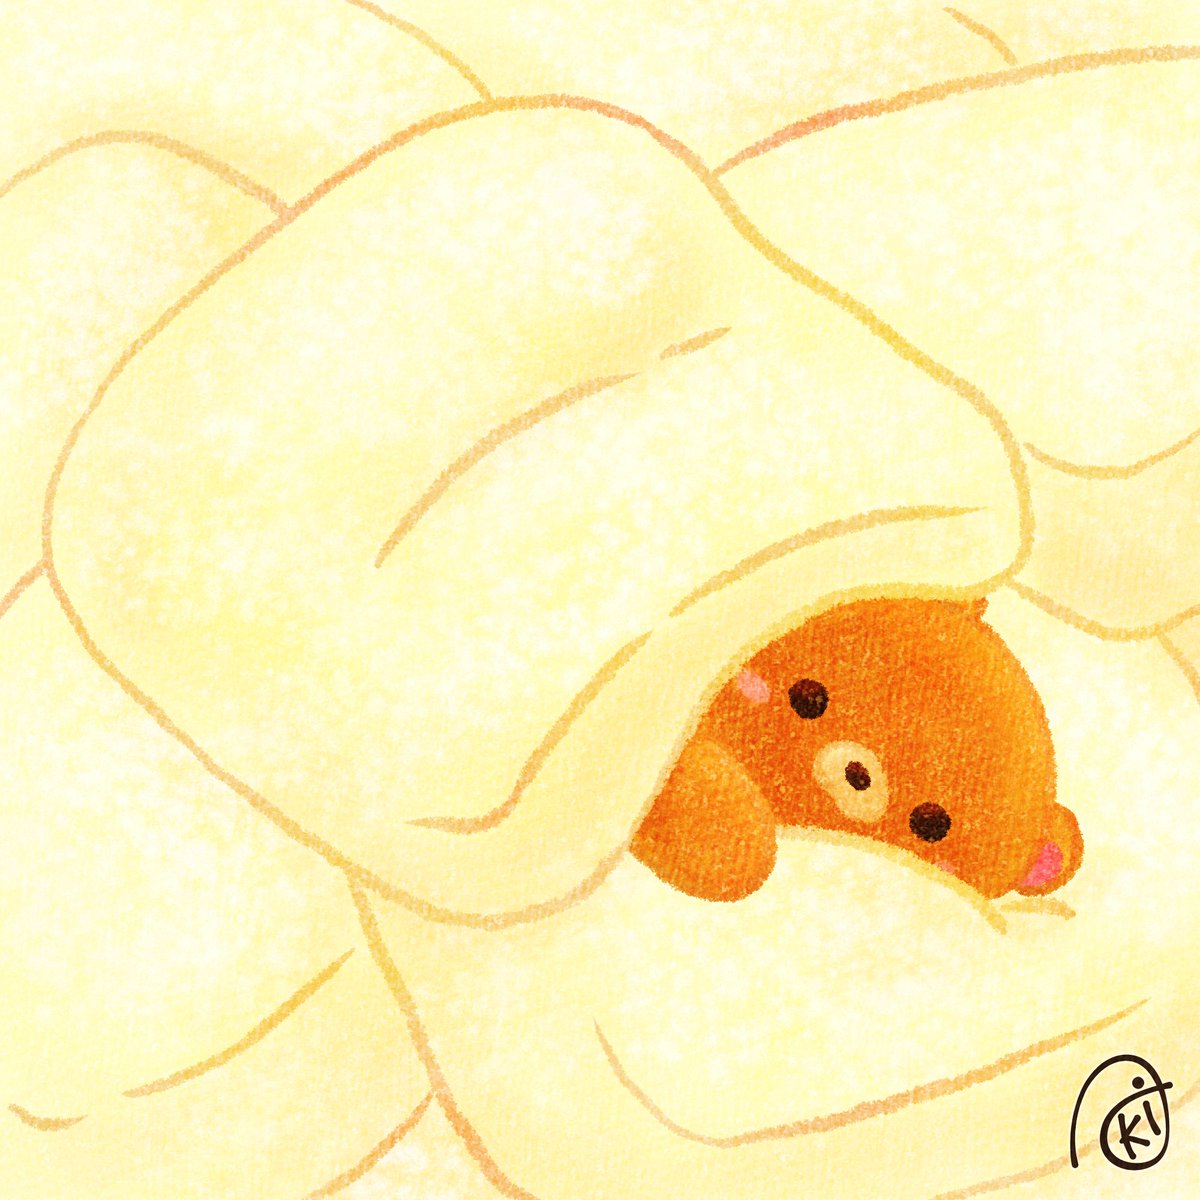 「バター餅 #イラスト  #お絵描き  #クマ  #バター餅 」|Akiのイラスト